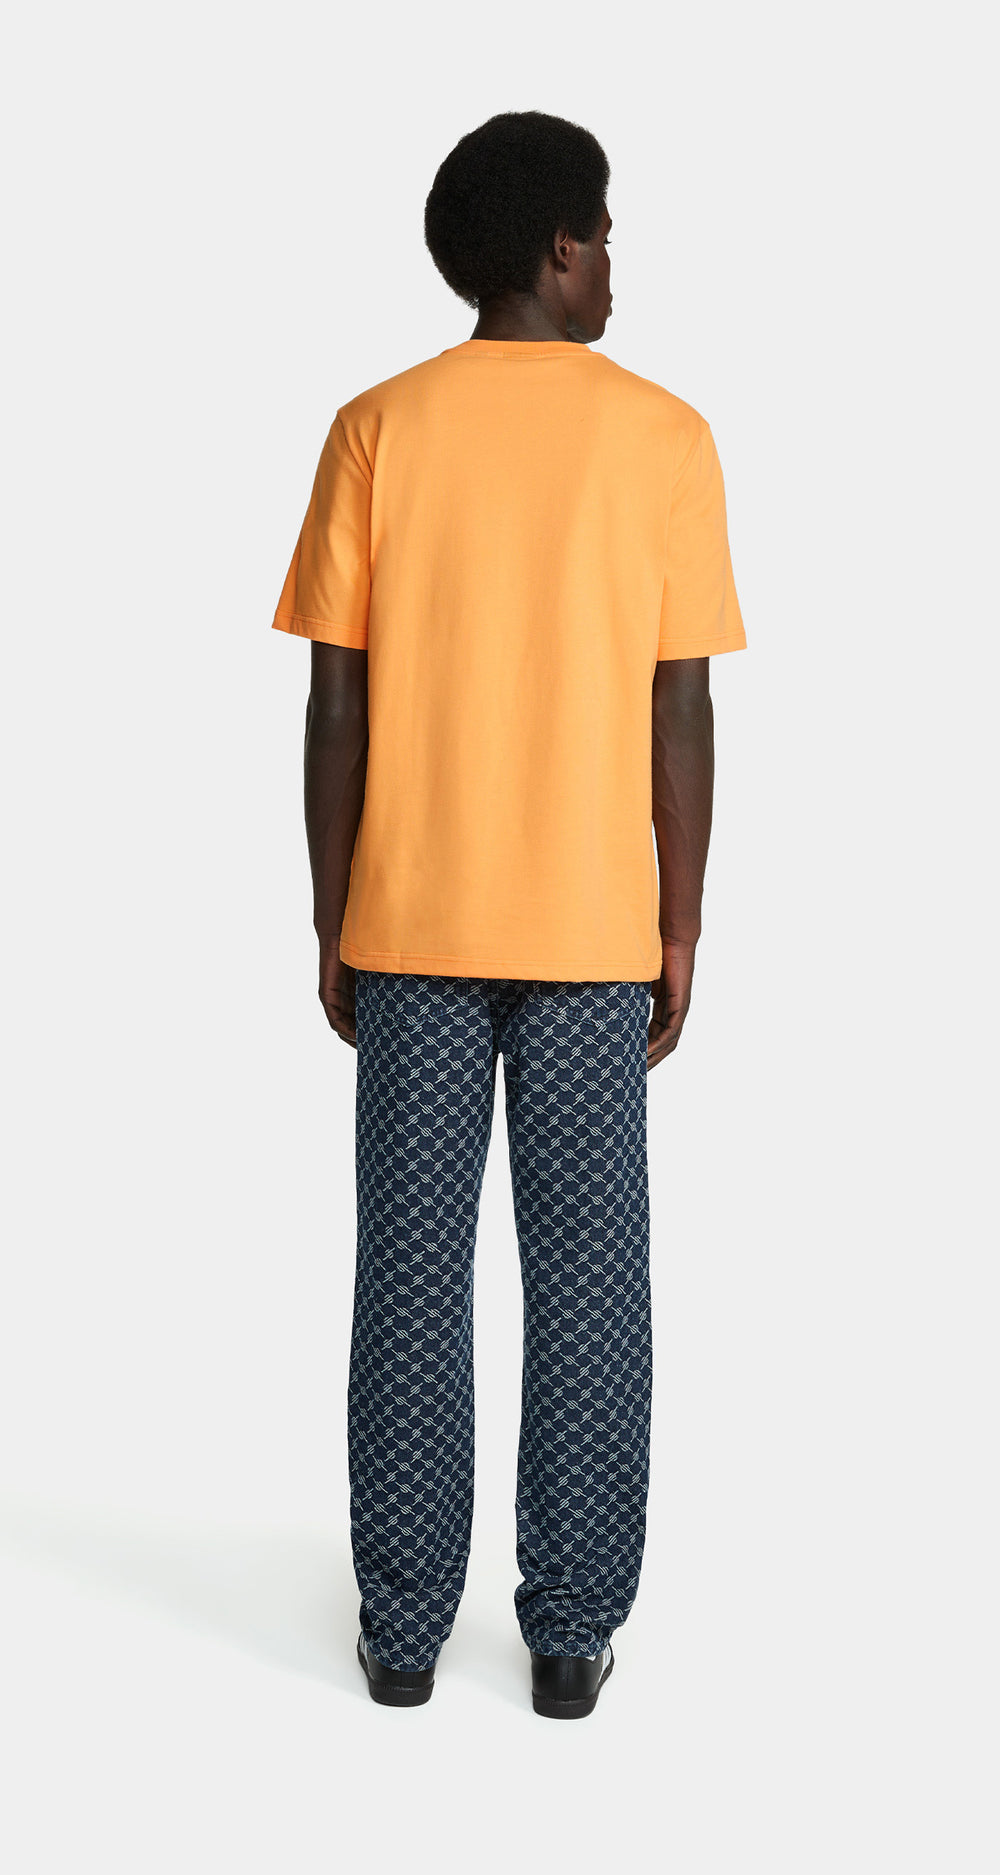 DP - Tangerine Orange Rivo T-Shirt - Men - Rear